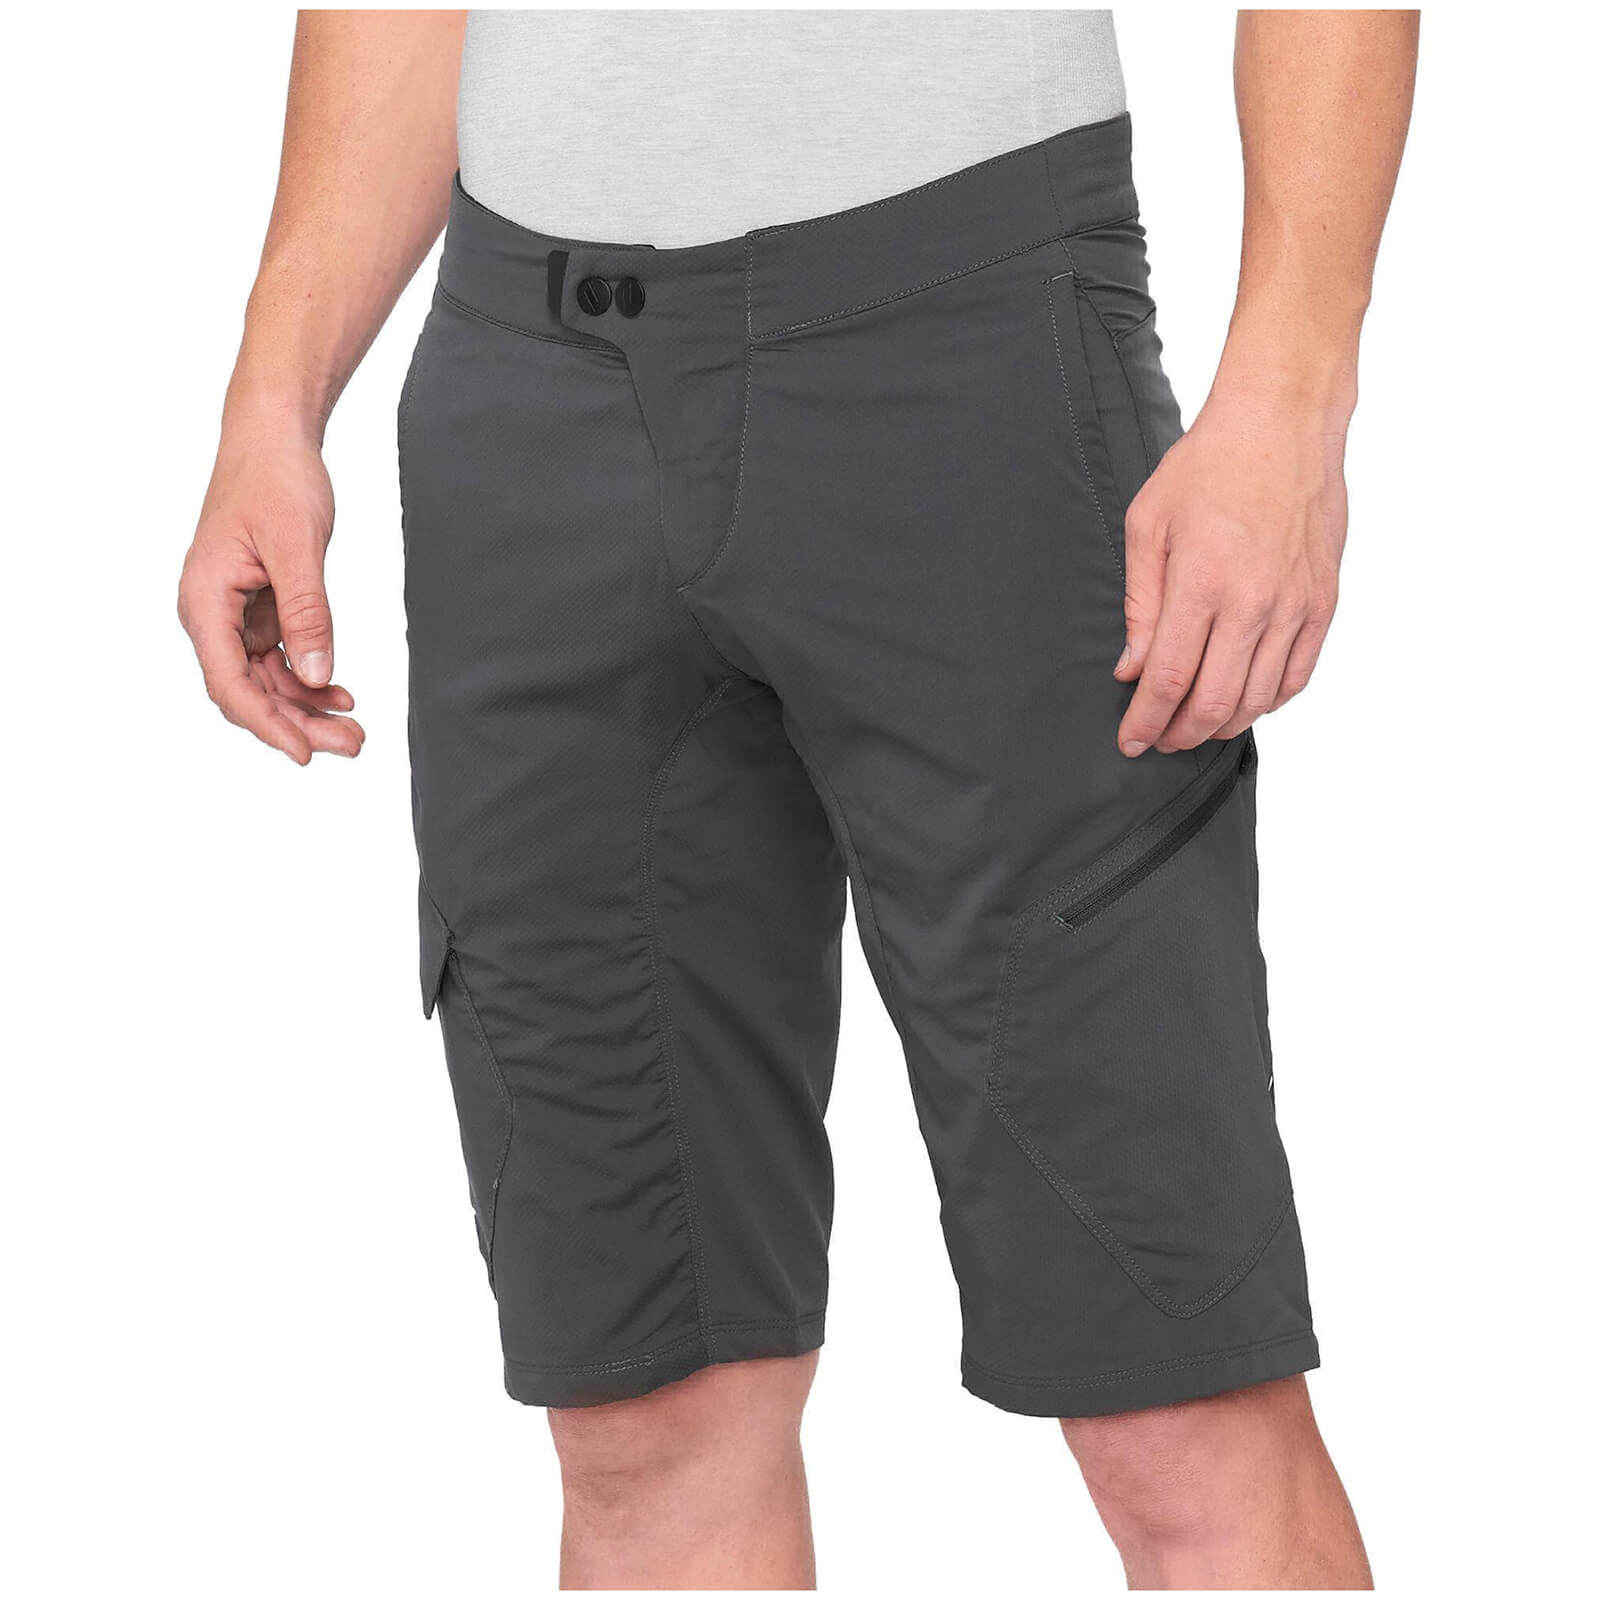 100% Ridecamp MTB Shorts - 30 - Charcoal